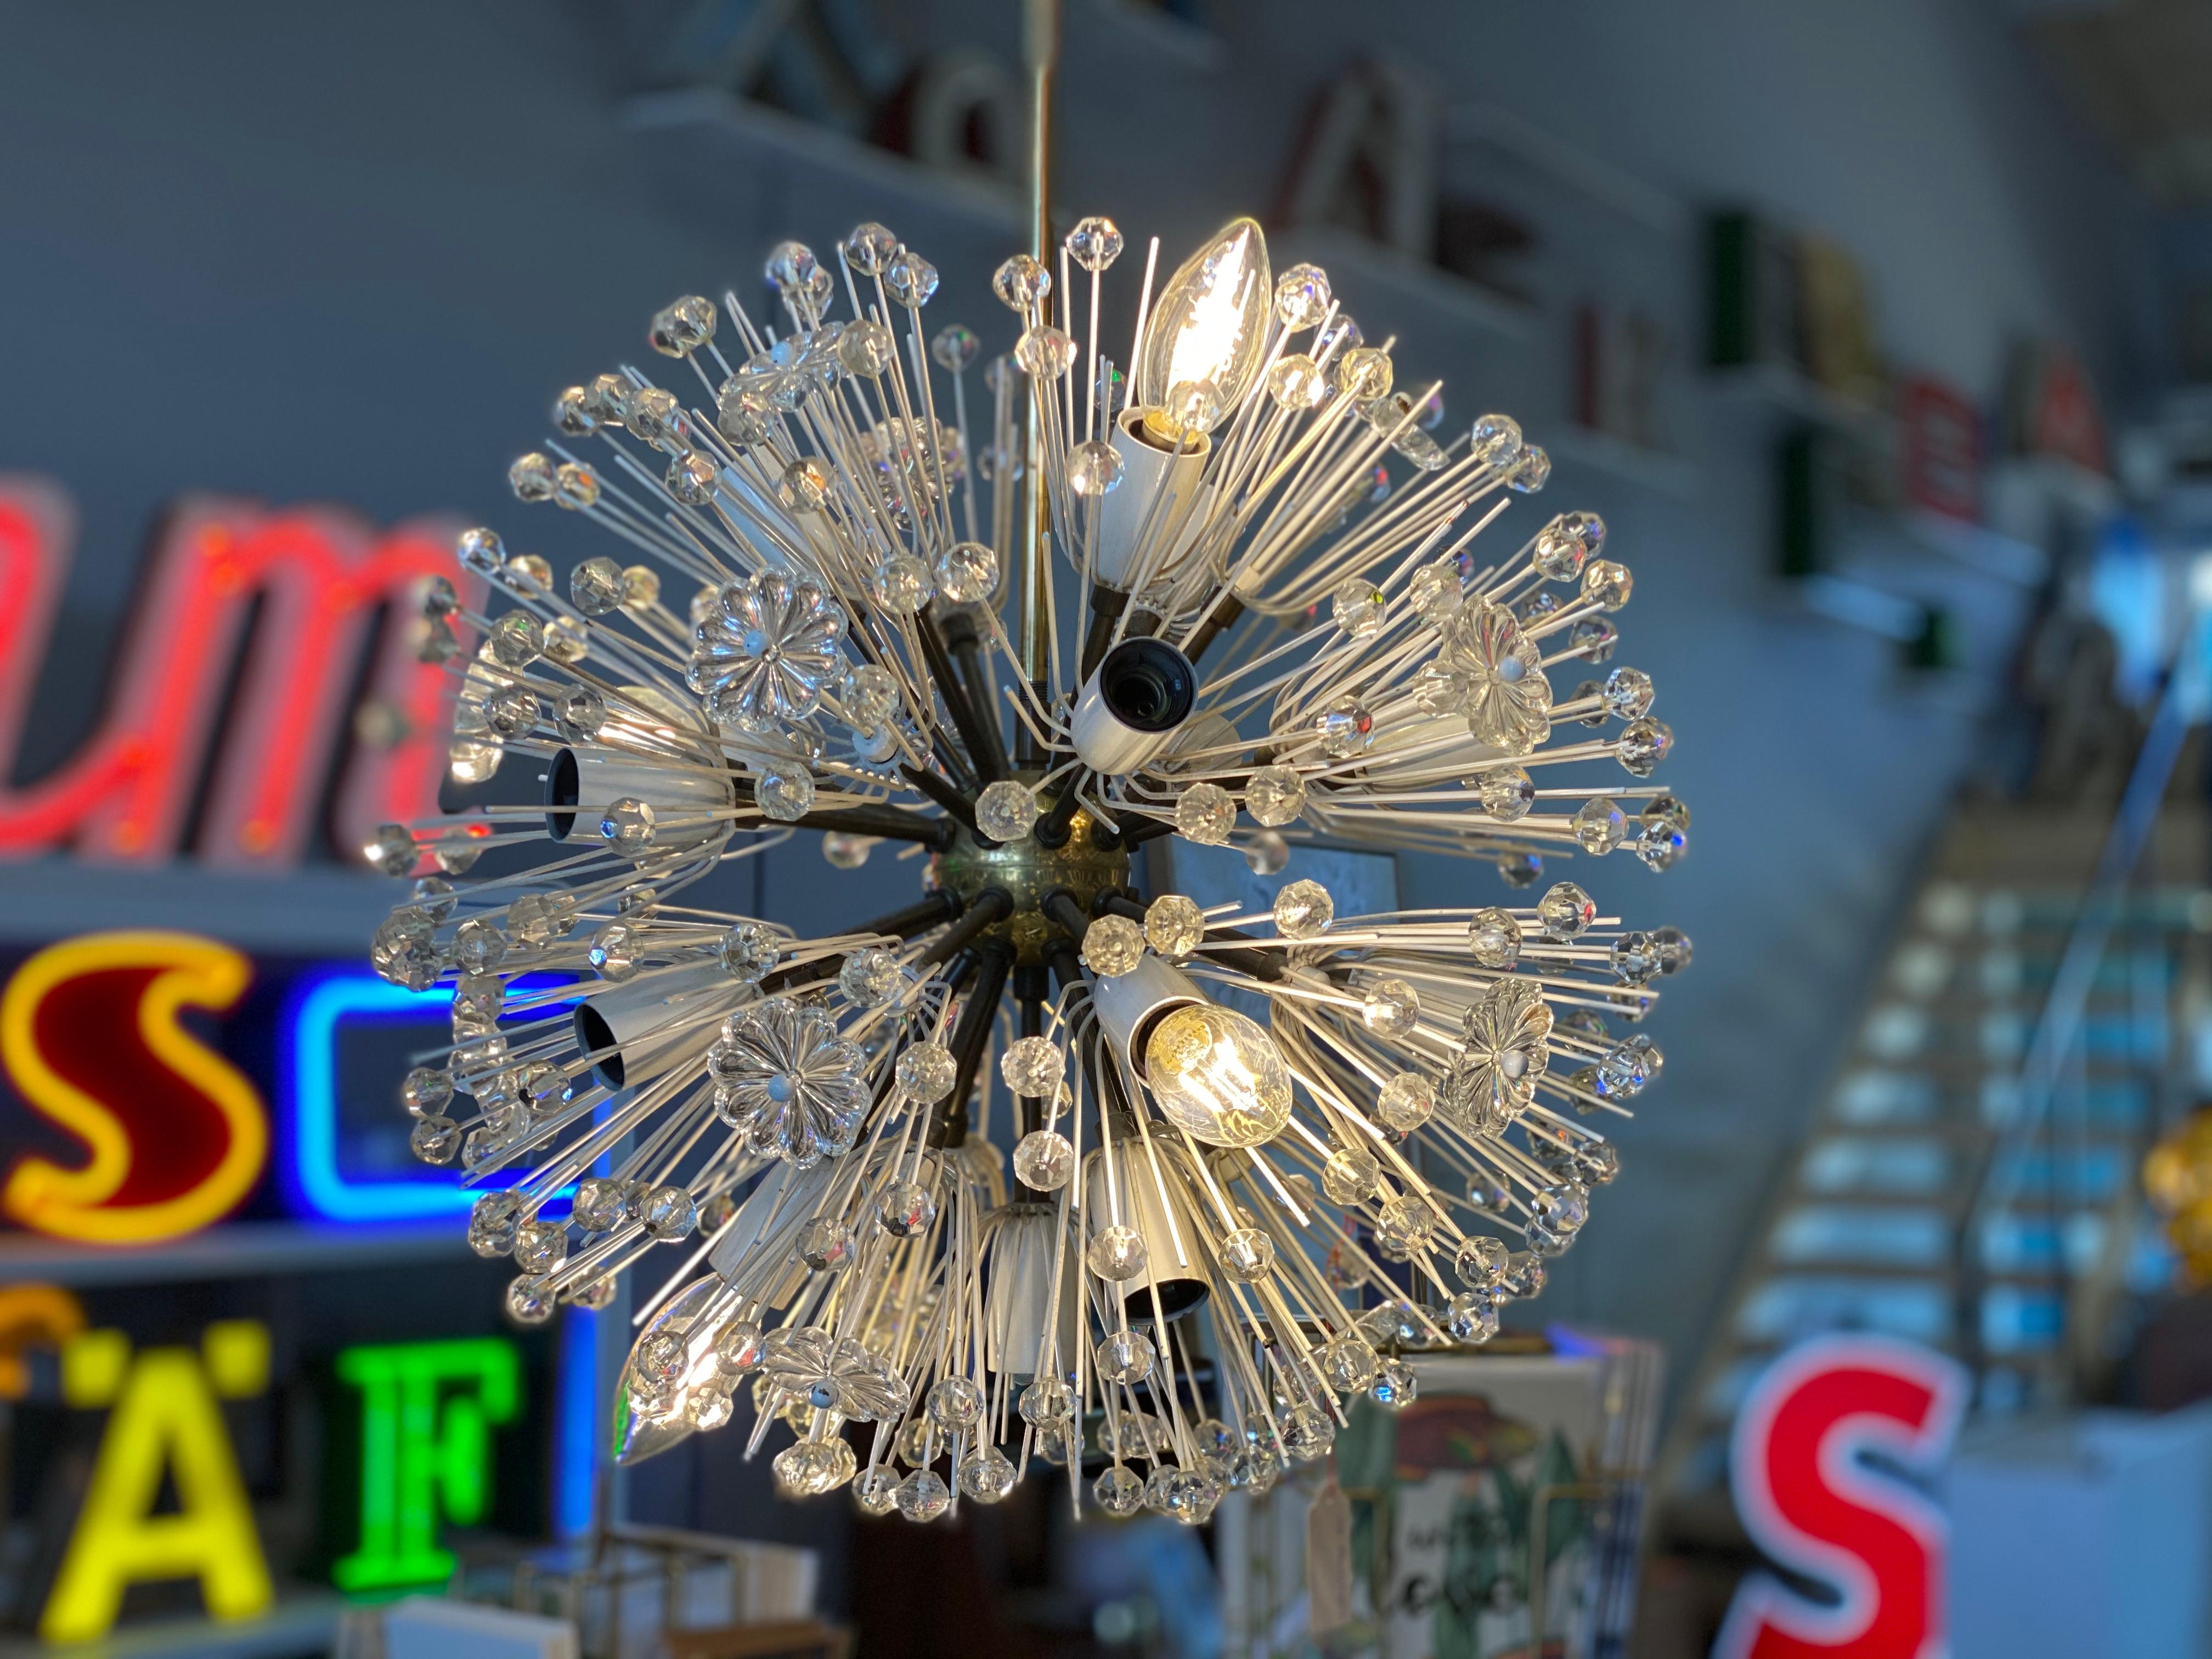 Ce lustre enchanteur a été conçu par Emil Stejnar dans les années 1950 pour le fabricant de luminaires viennois Rupert Nikoll. Les plafonniers de Stejnar se caractérisent par des formes étoilées et une délicate laque de verre. Ce spécimen, la lampe